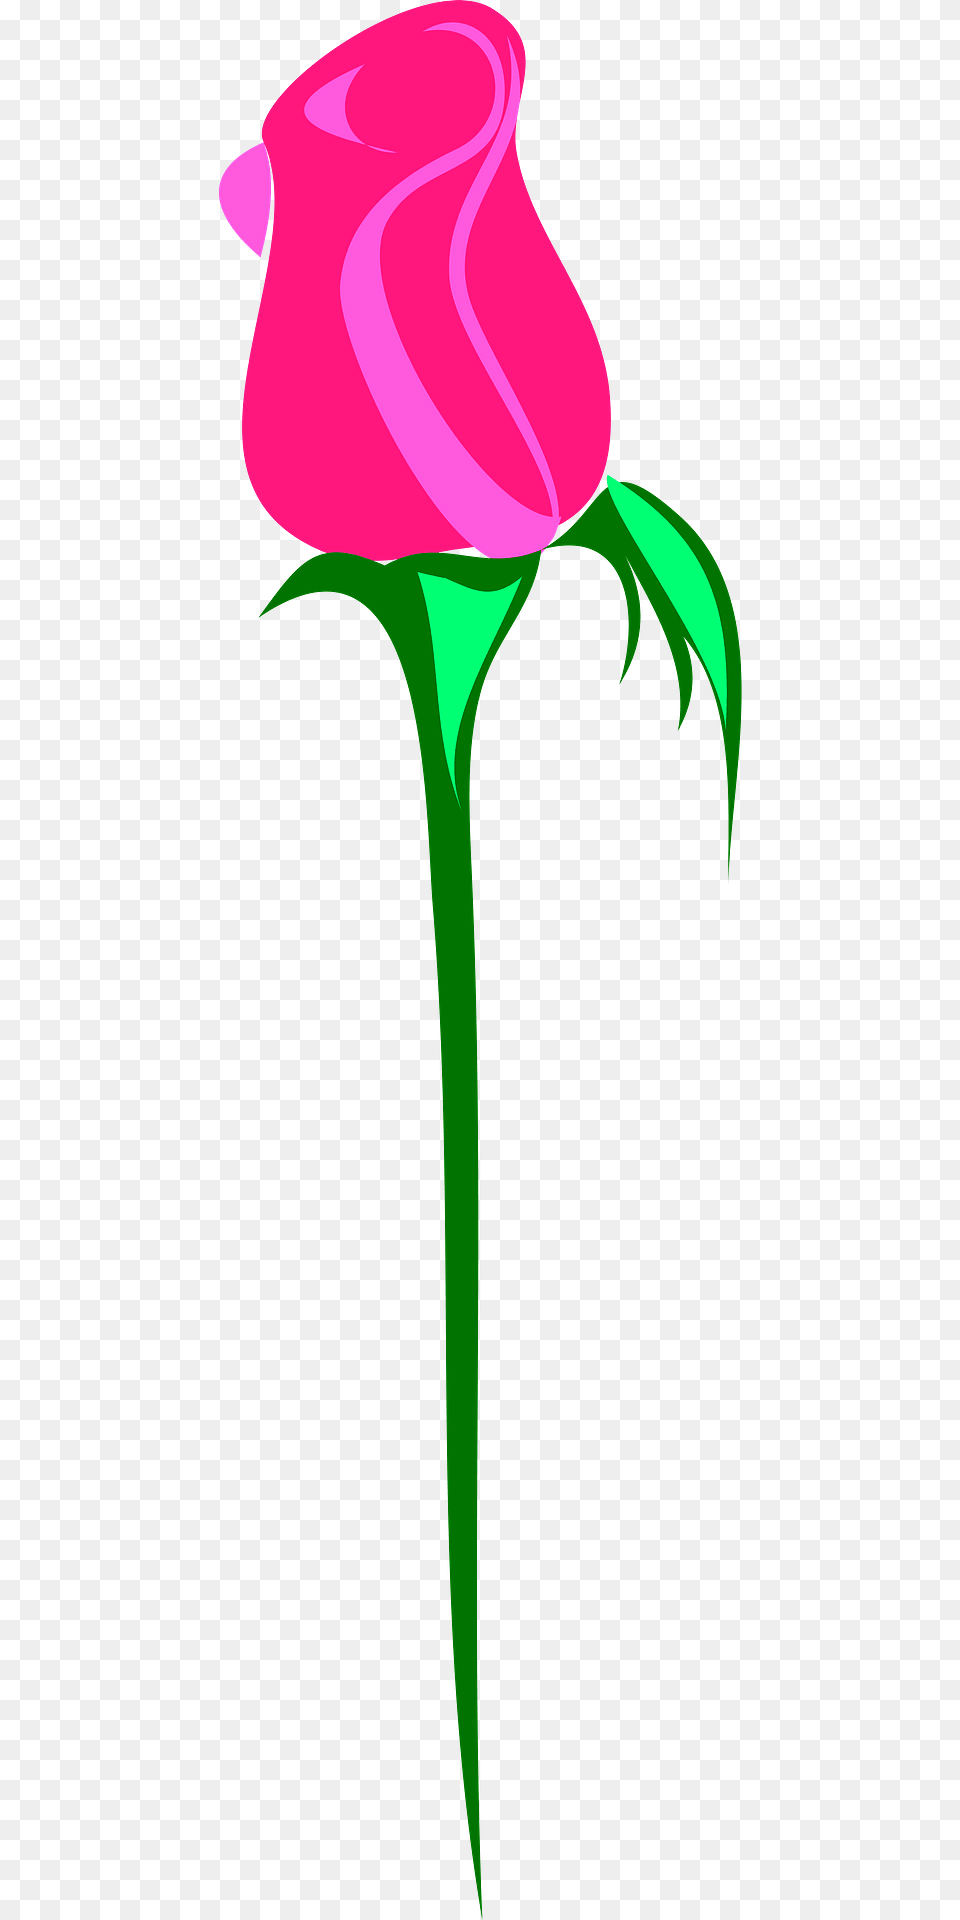 Long Stem Pink Rose Bud Clipart, Flower, Plant, Petal Png Image